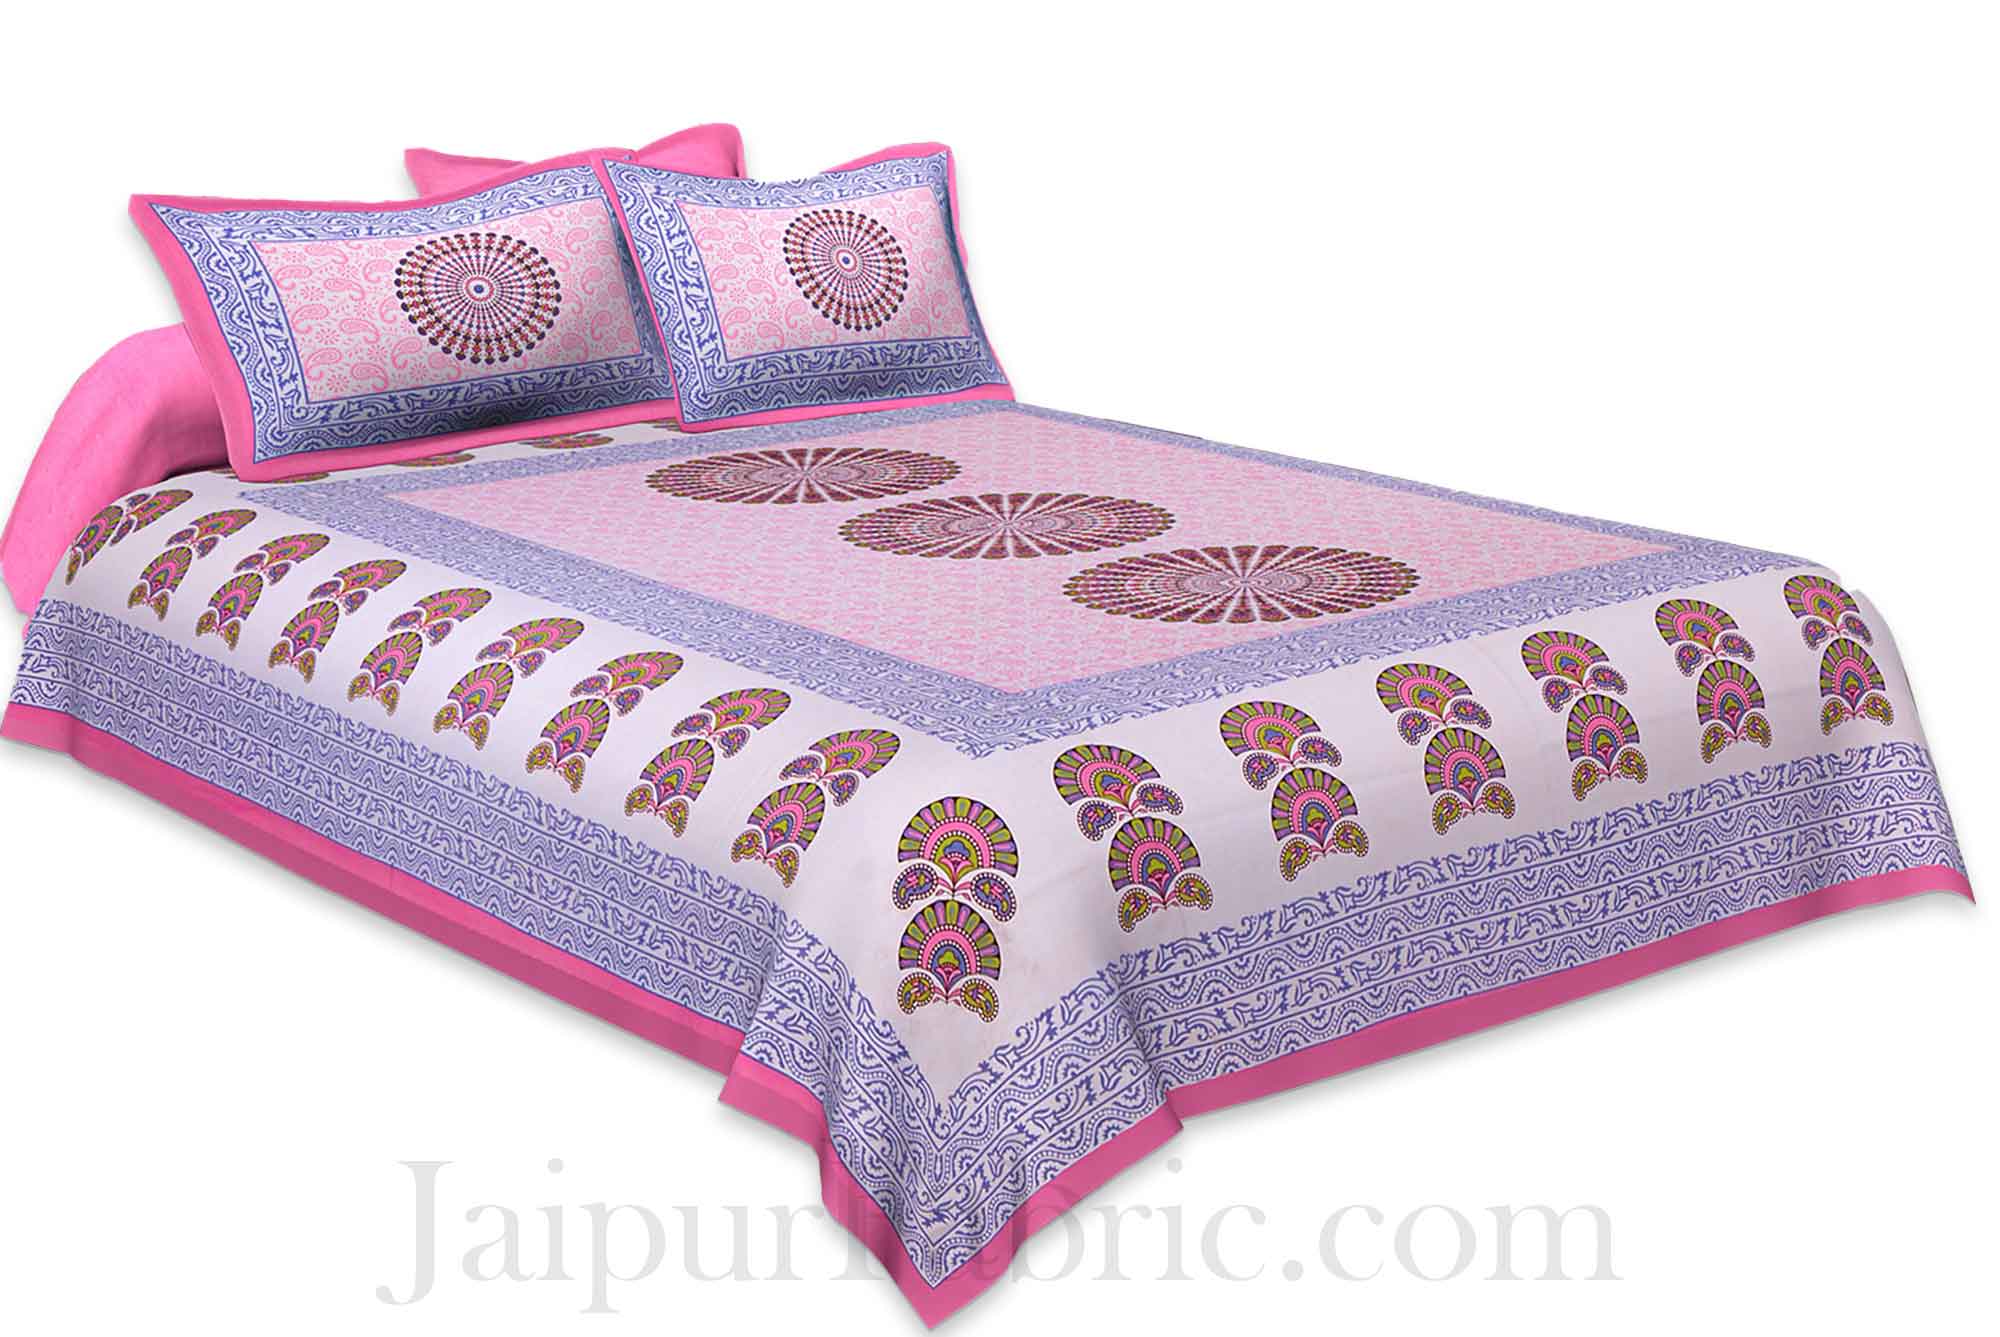 Pink Sanganeri Printed Cotton Double Bed Sheet